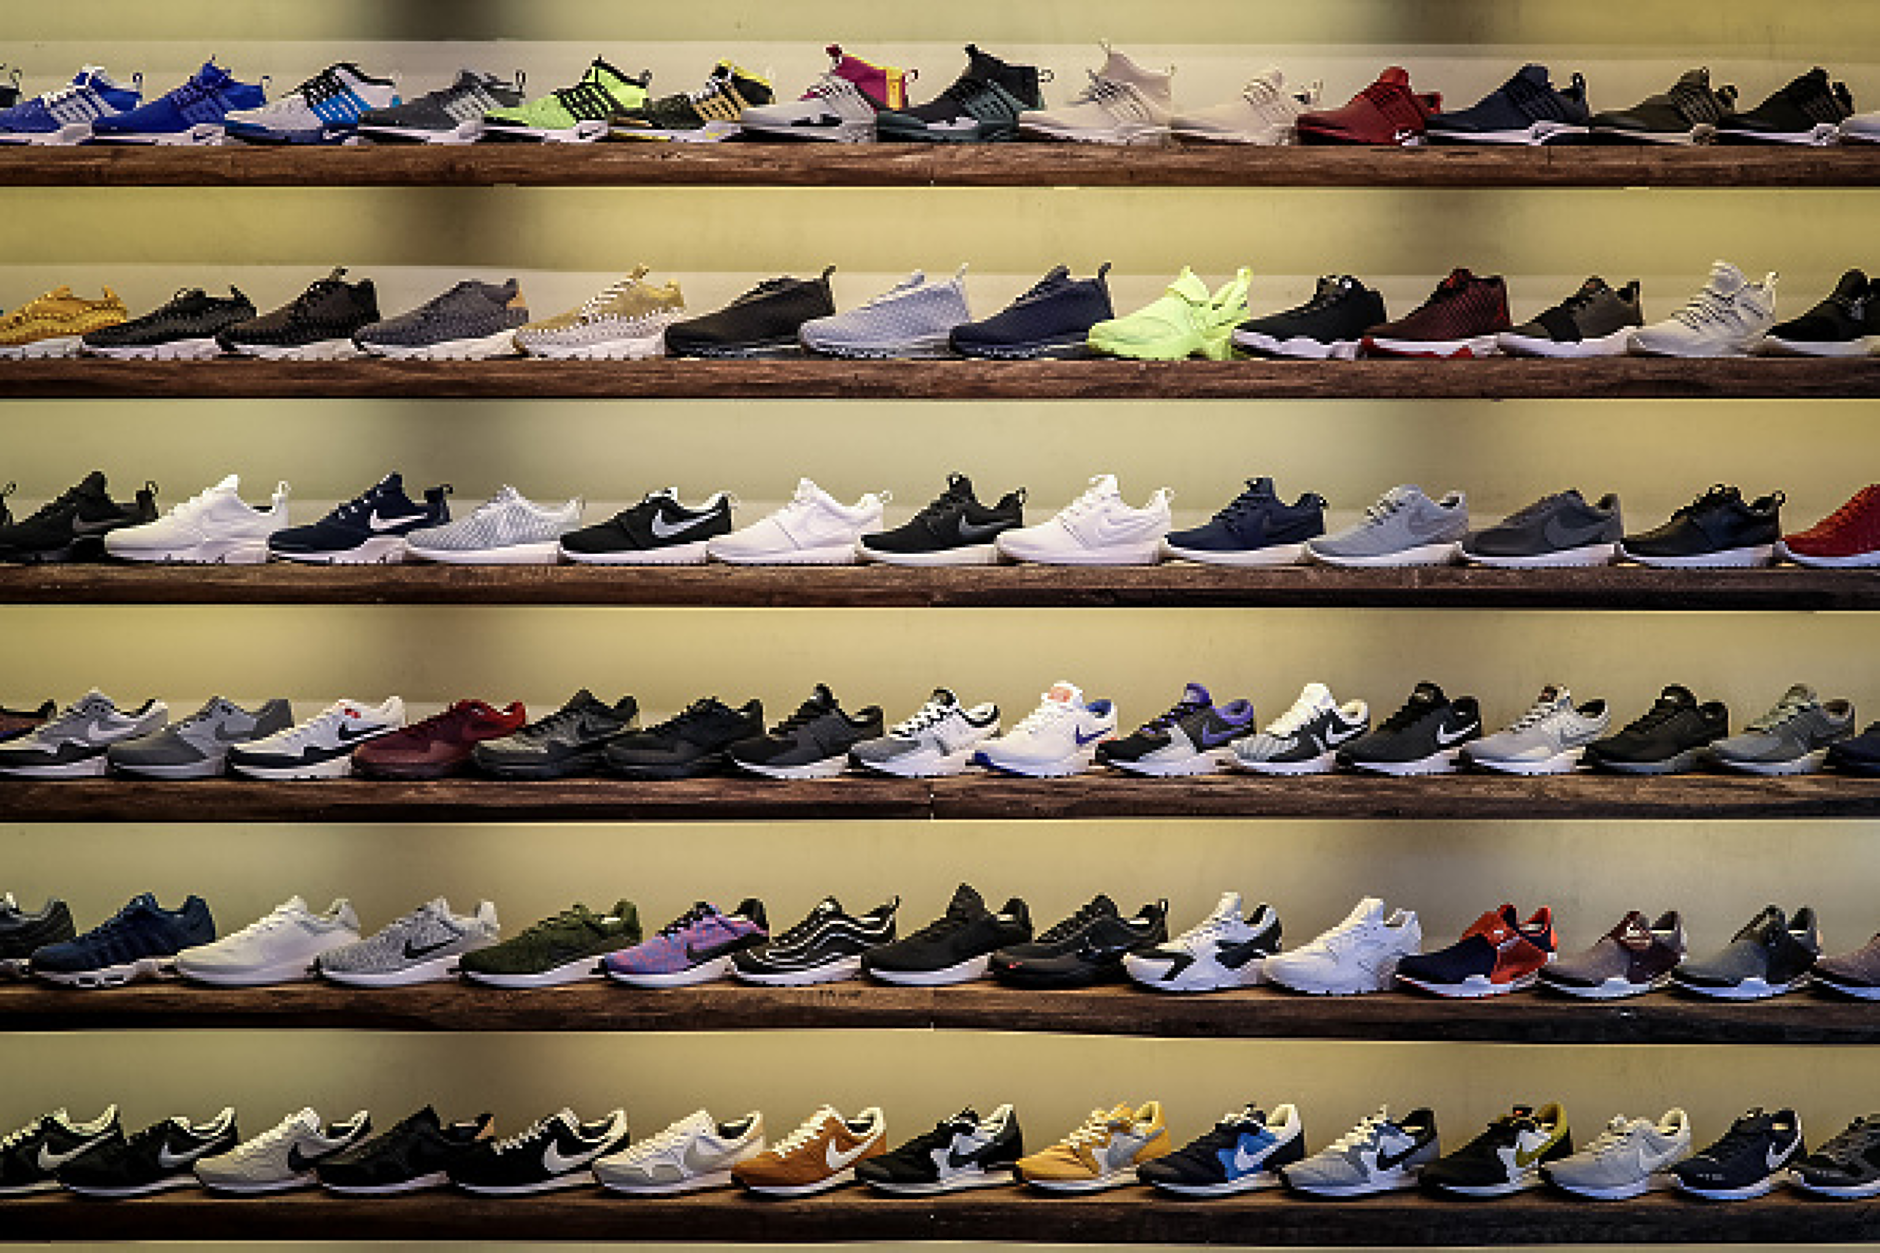 Sneakers магазин кроссовок. Коллекция кроссовок. Много кроссовок. Коллекция кроссовок Nike. Коллекционер кроссовок.